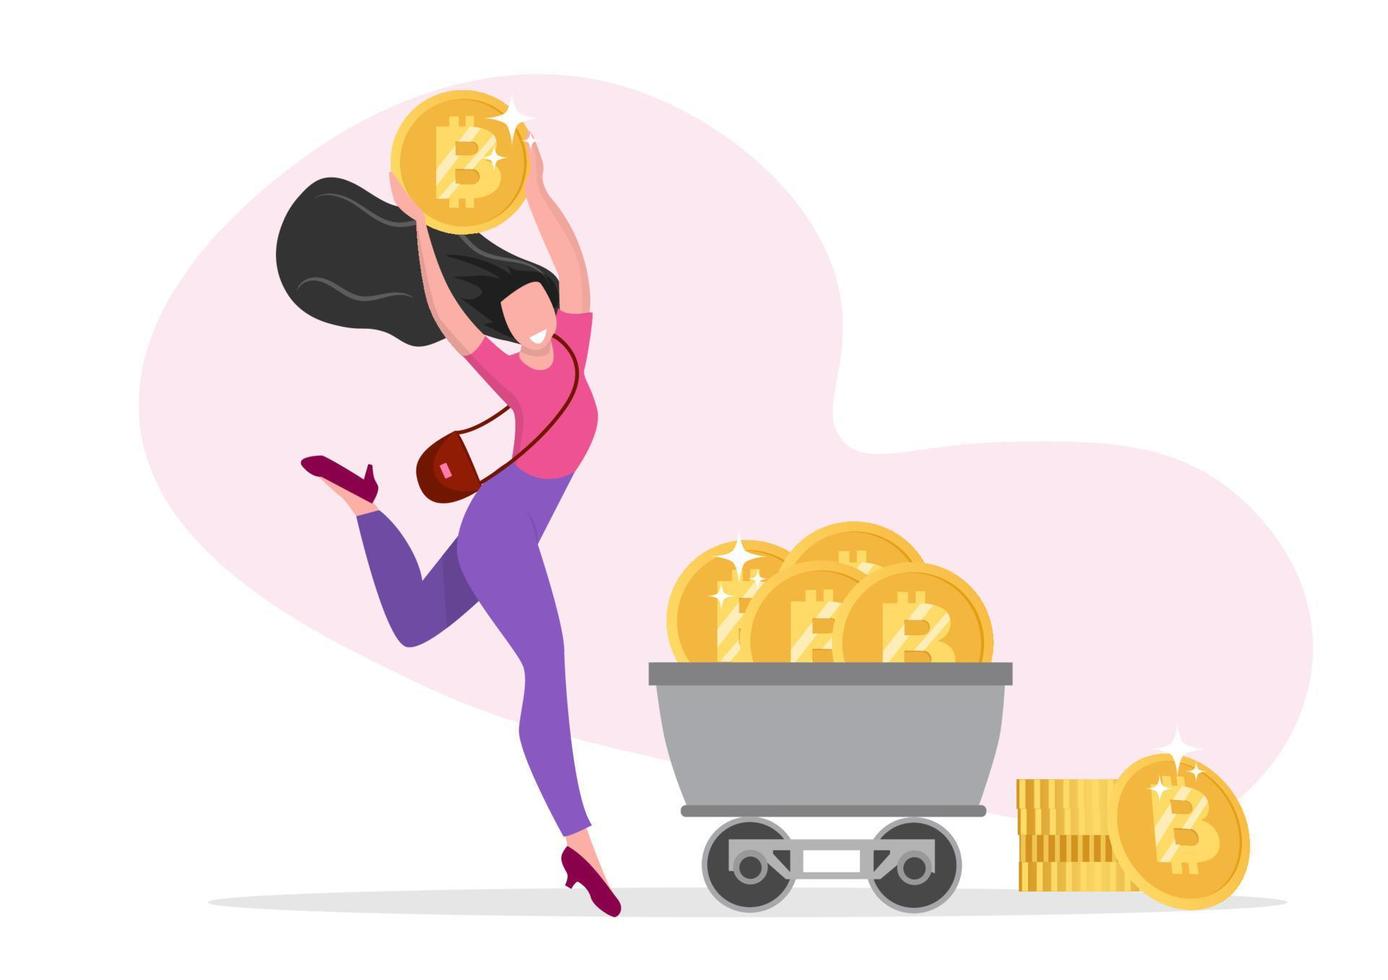 personajes femeninos con símbolos de felicidad, riqueza de bitcoin, tema de moneda criptográfica. vector de ilustración de dibujos animados de estilo plano.